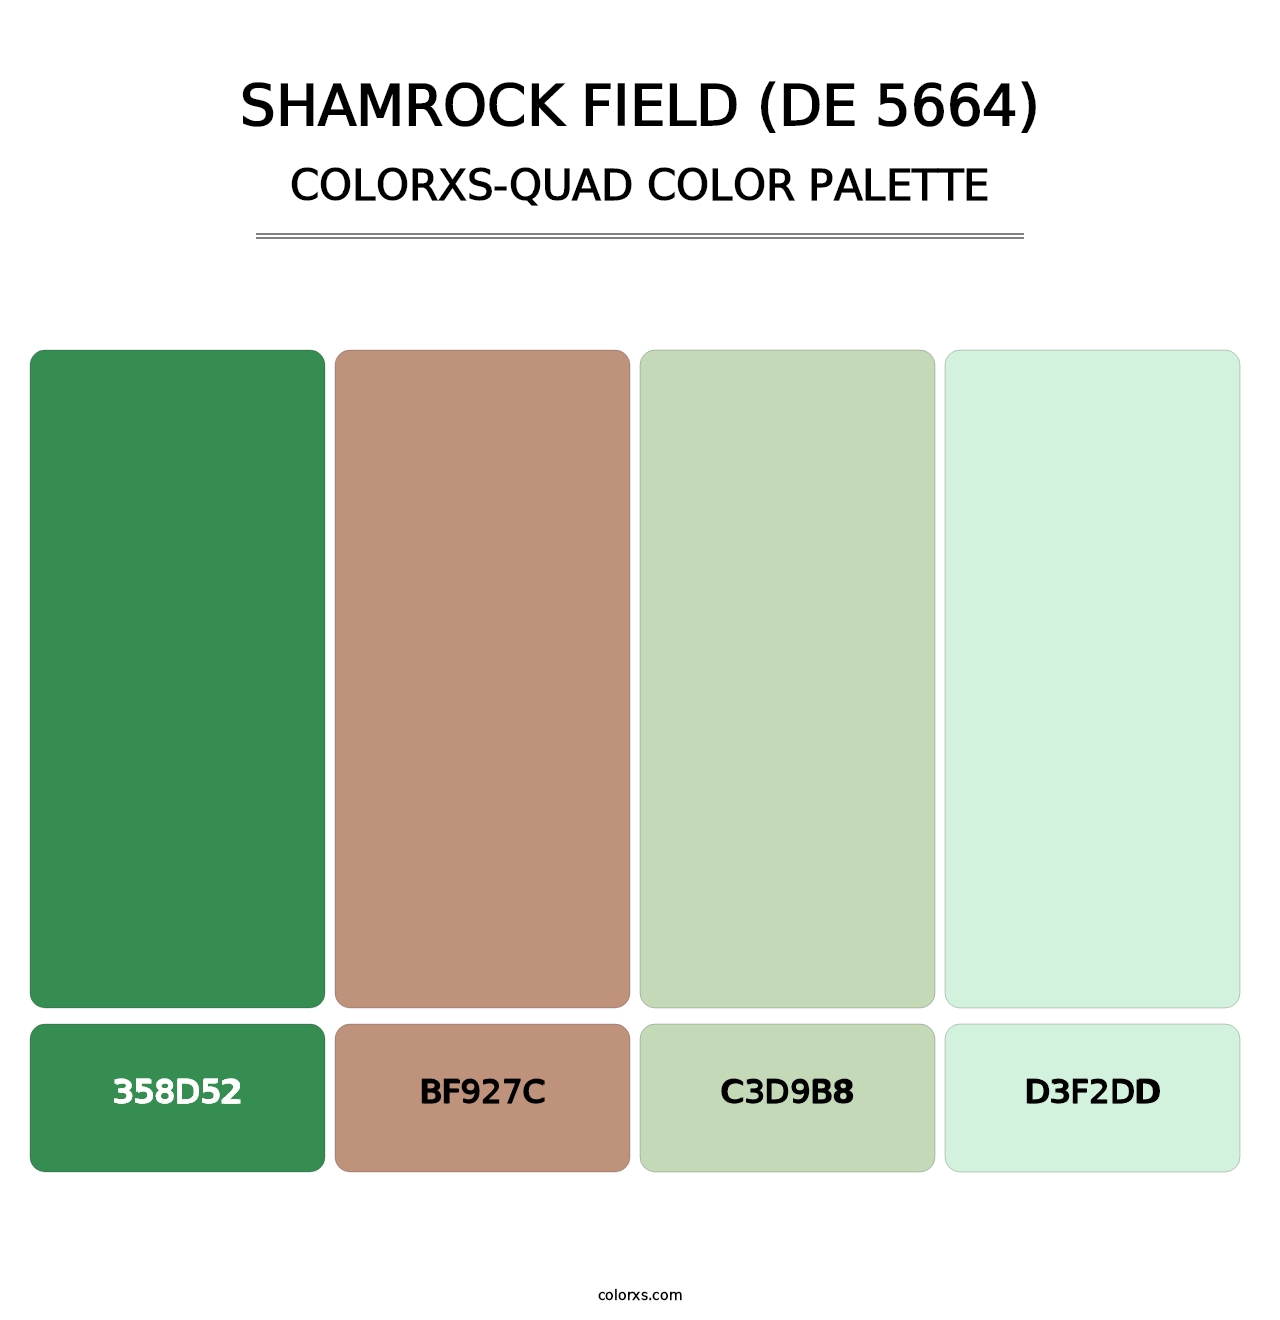 Shamrock Field (DE 5664) - Colorxs Quad Palette